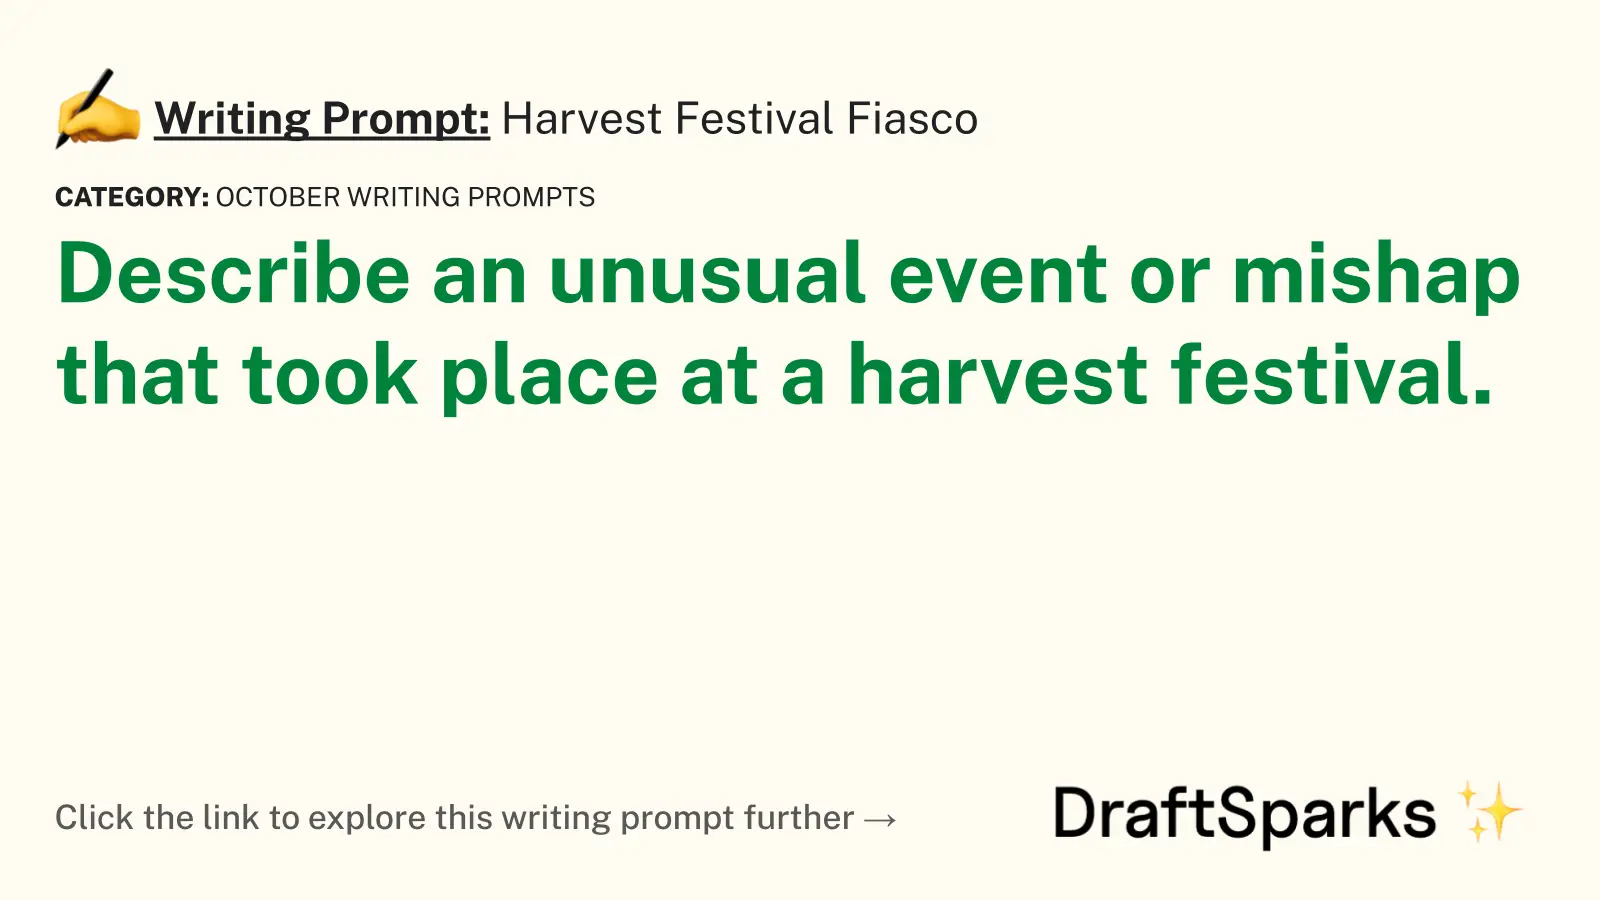 Harvest Festival Fiasco